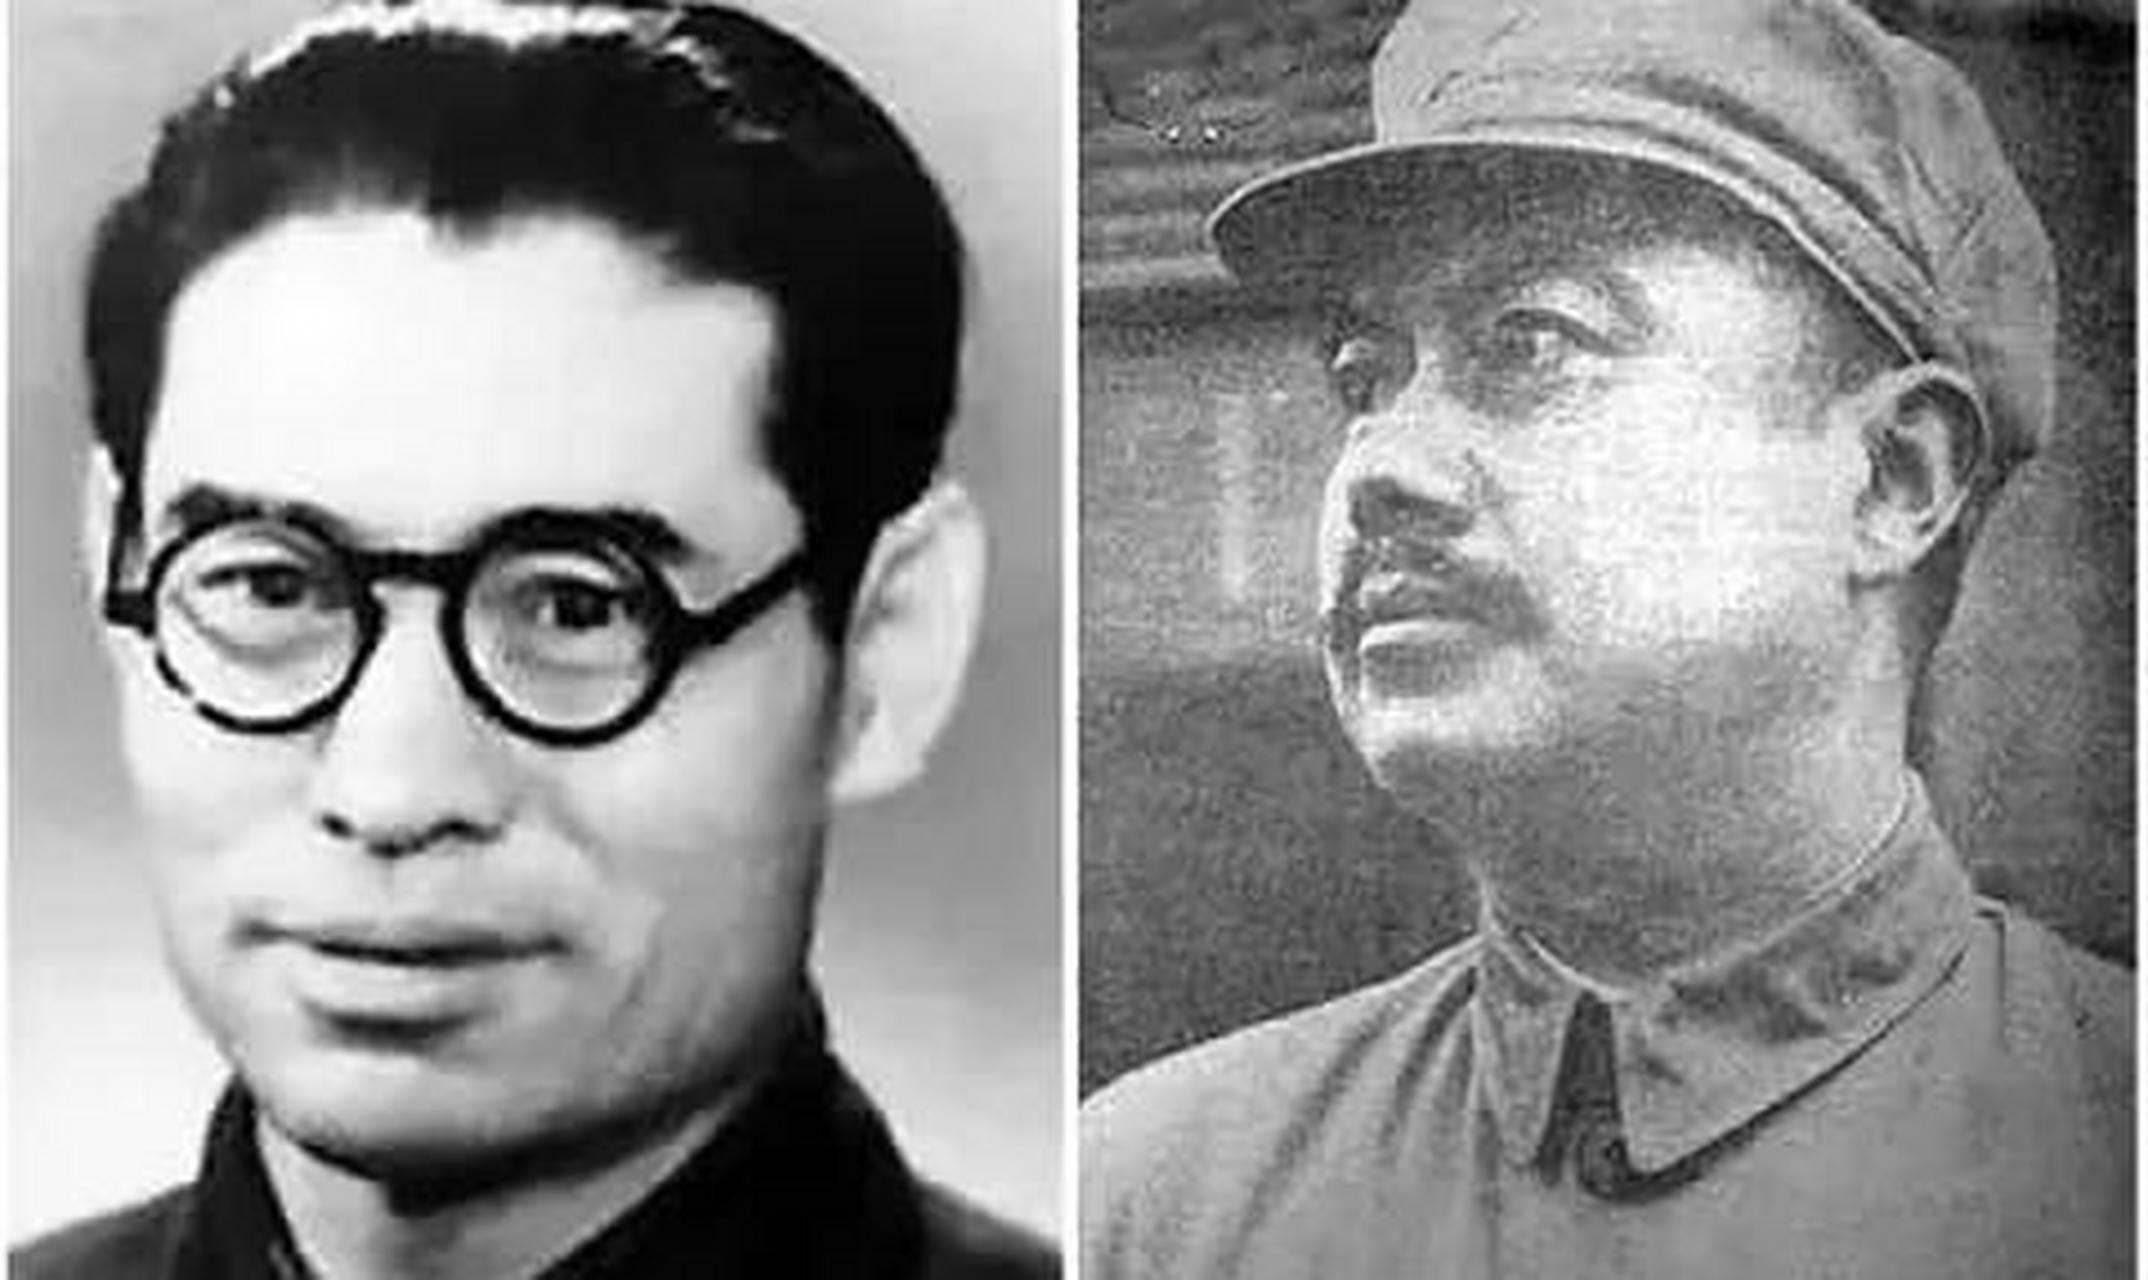 1953年,高岗与饶漱石两人配合得更密切了,加快了篡夺党和国家权力的步